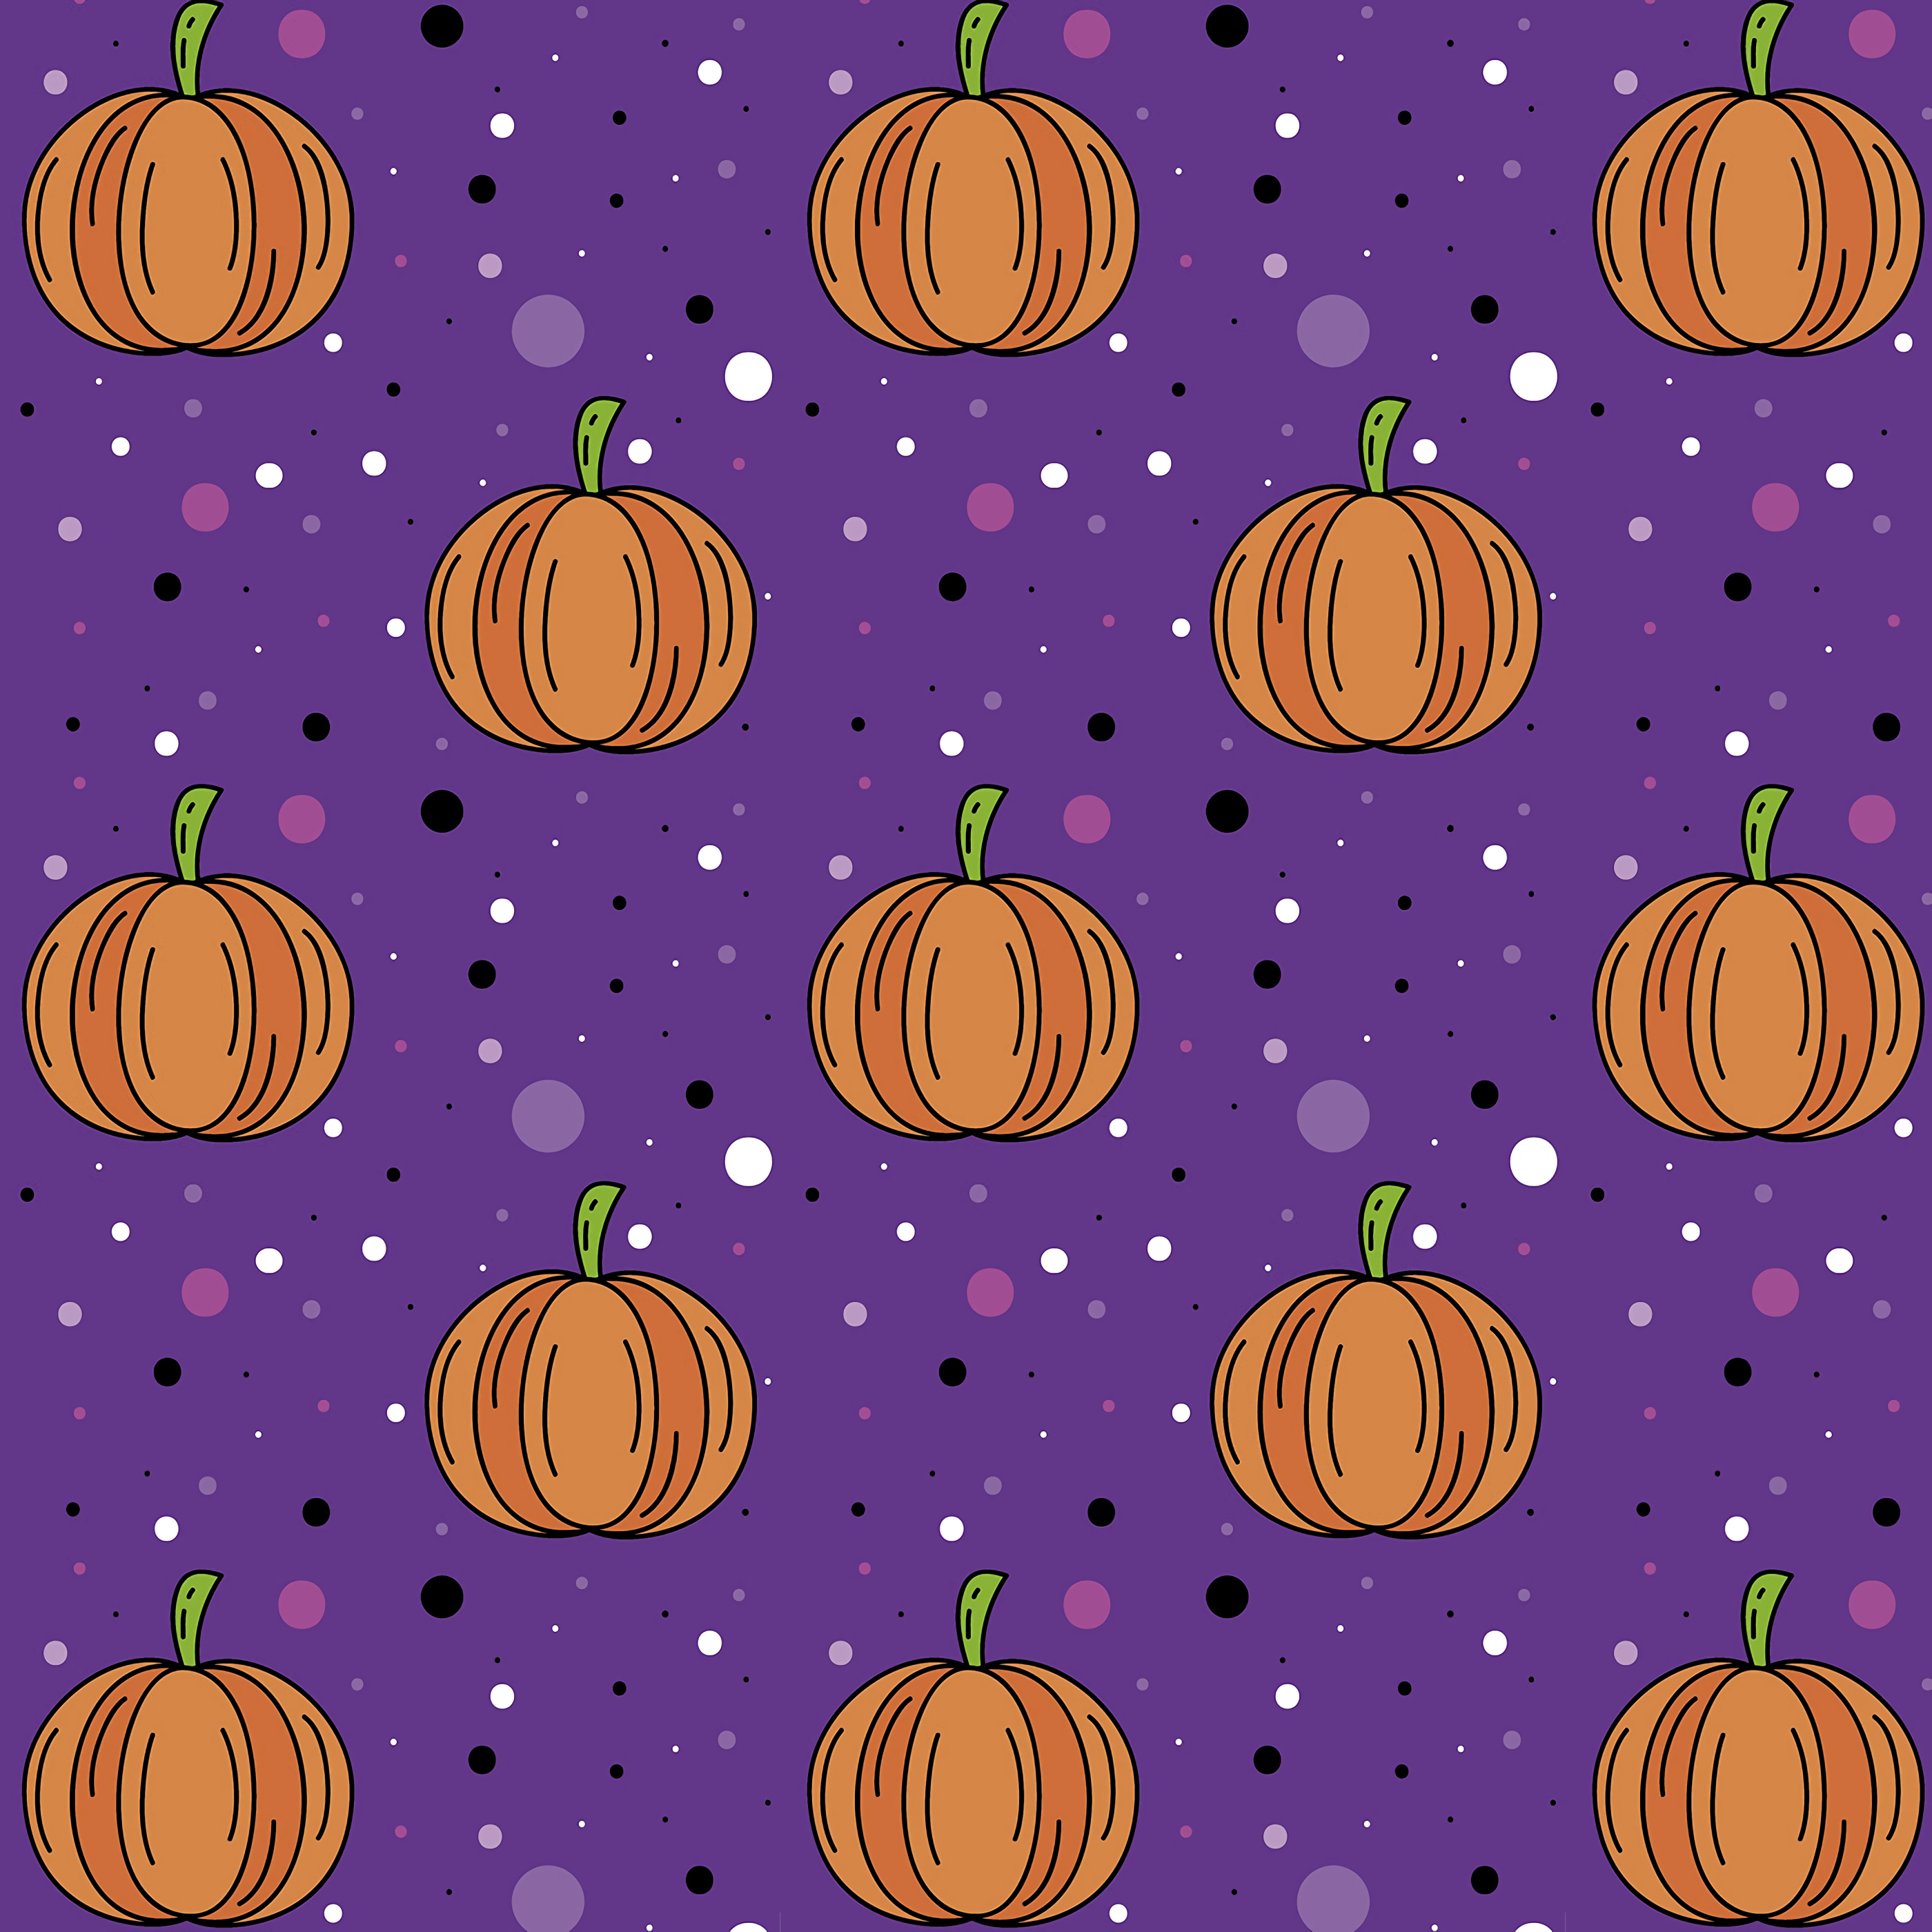 Best Pumpkin Desktop Wallpapers